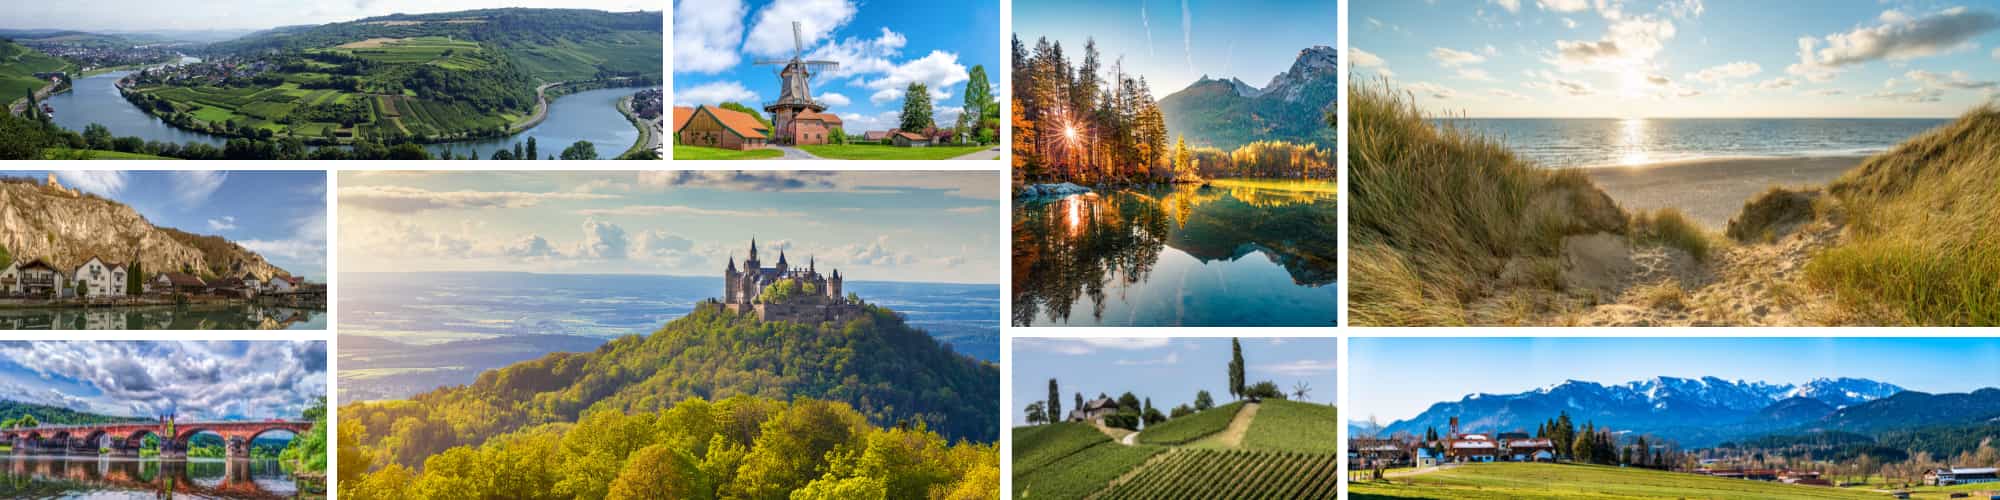 Die Schönsten Regionen Deutschlands mit M-TOURS ERLEBNISREISEN entdecken.